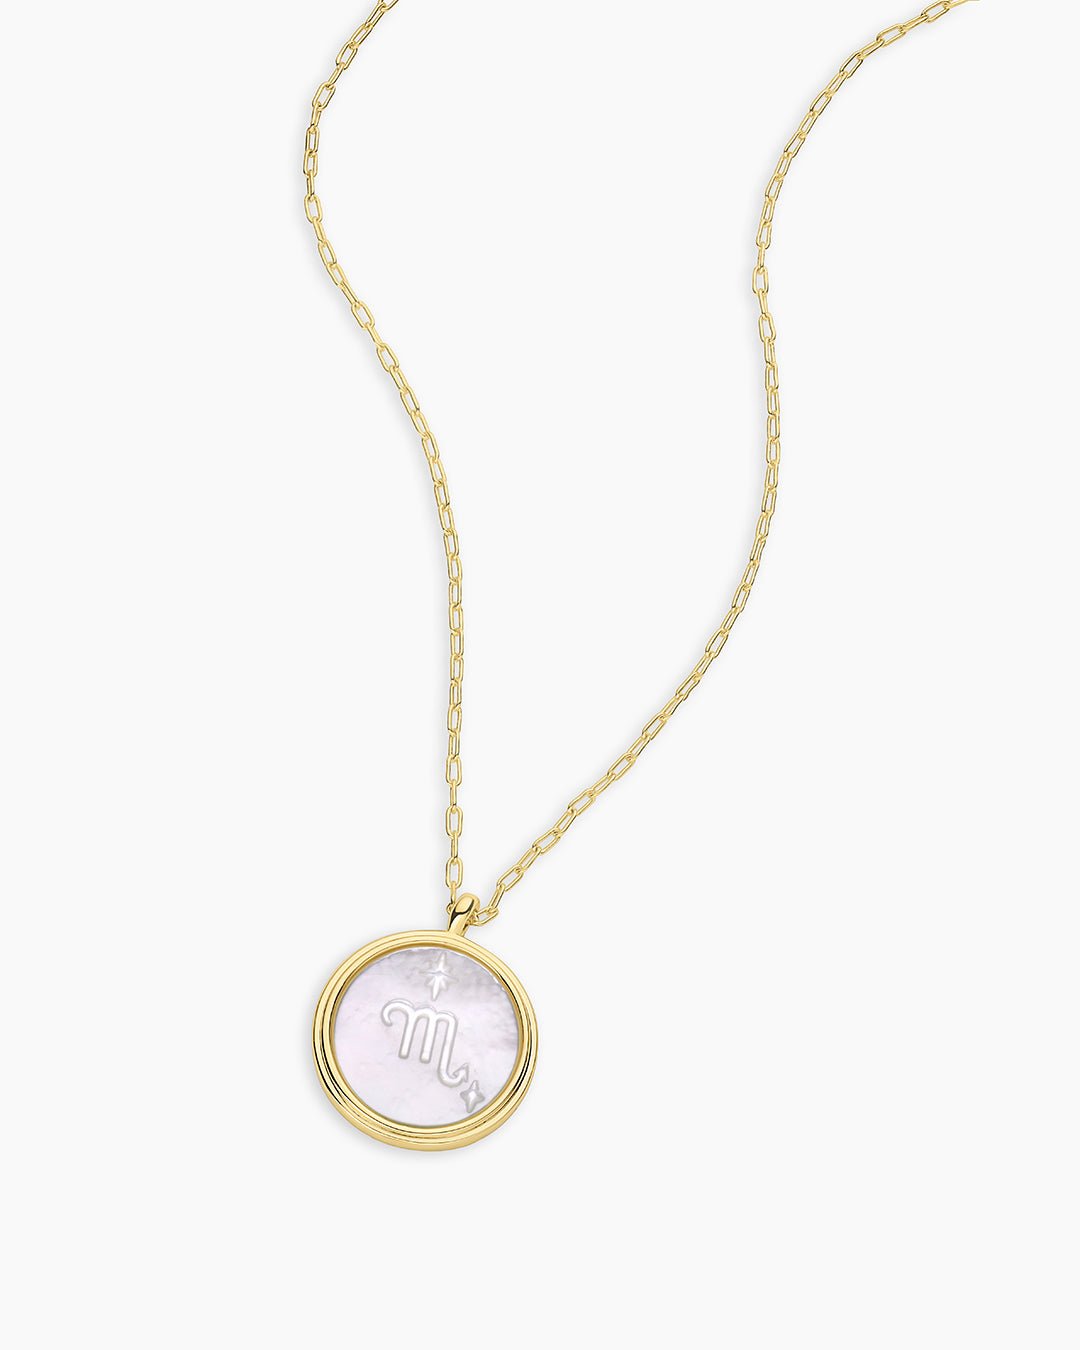 Zodiac Necklace - Scorpio, Astrology Coin Necklace, Scorpio Necklace || option::Gold Plated, Scorpio